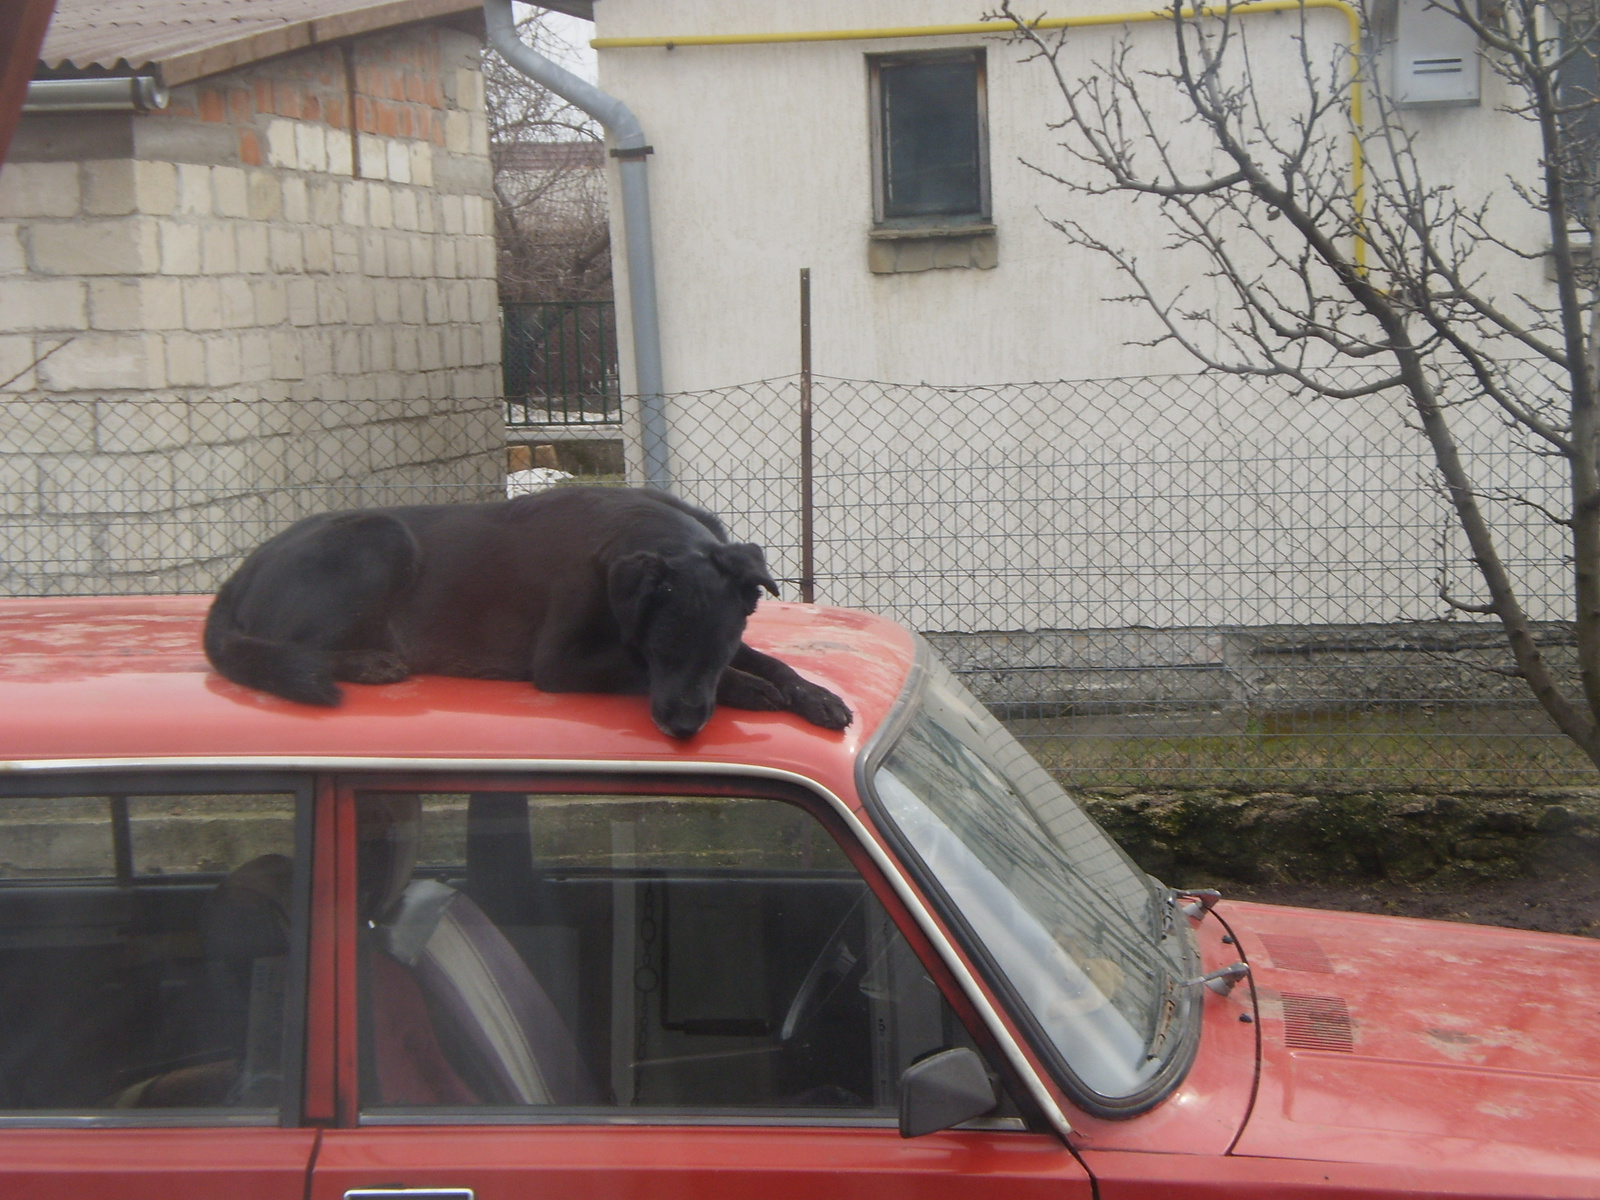 Kép az ablakon át,kutya a kocsi tetején